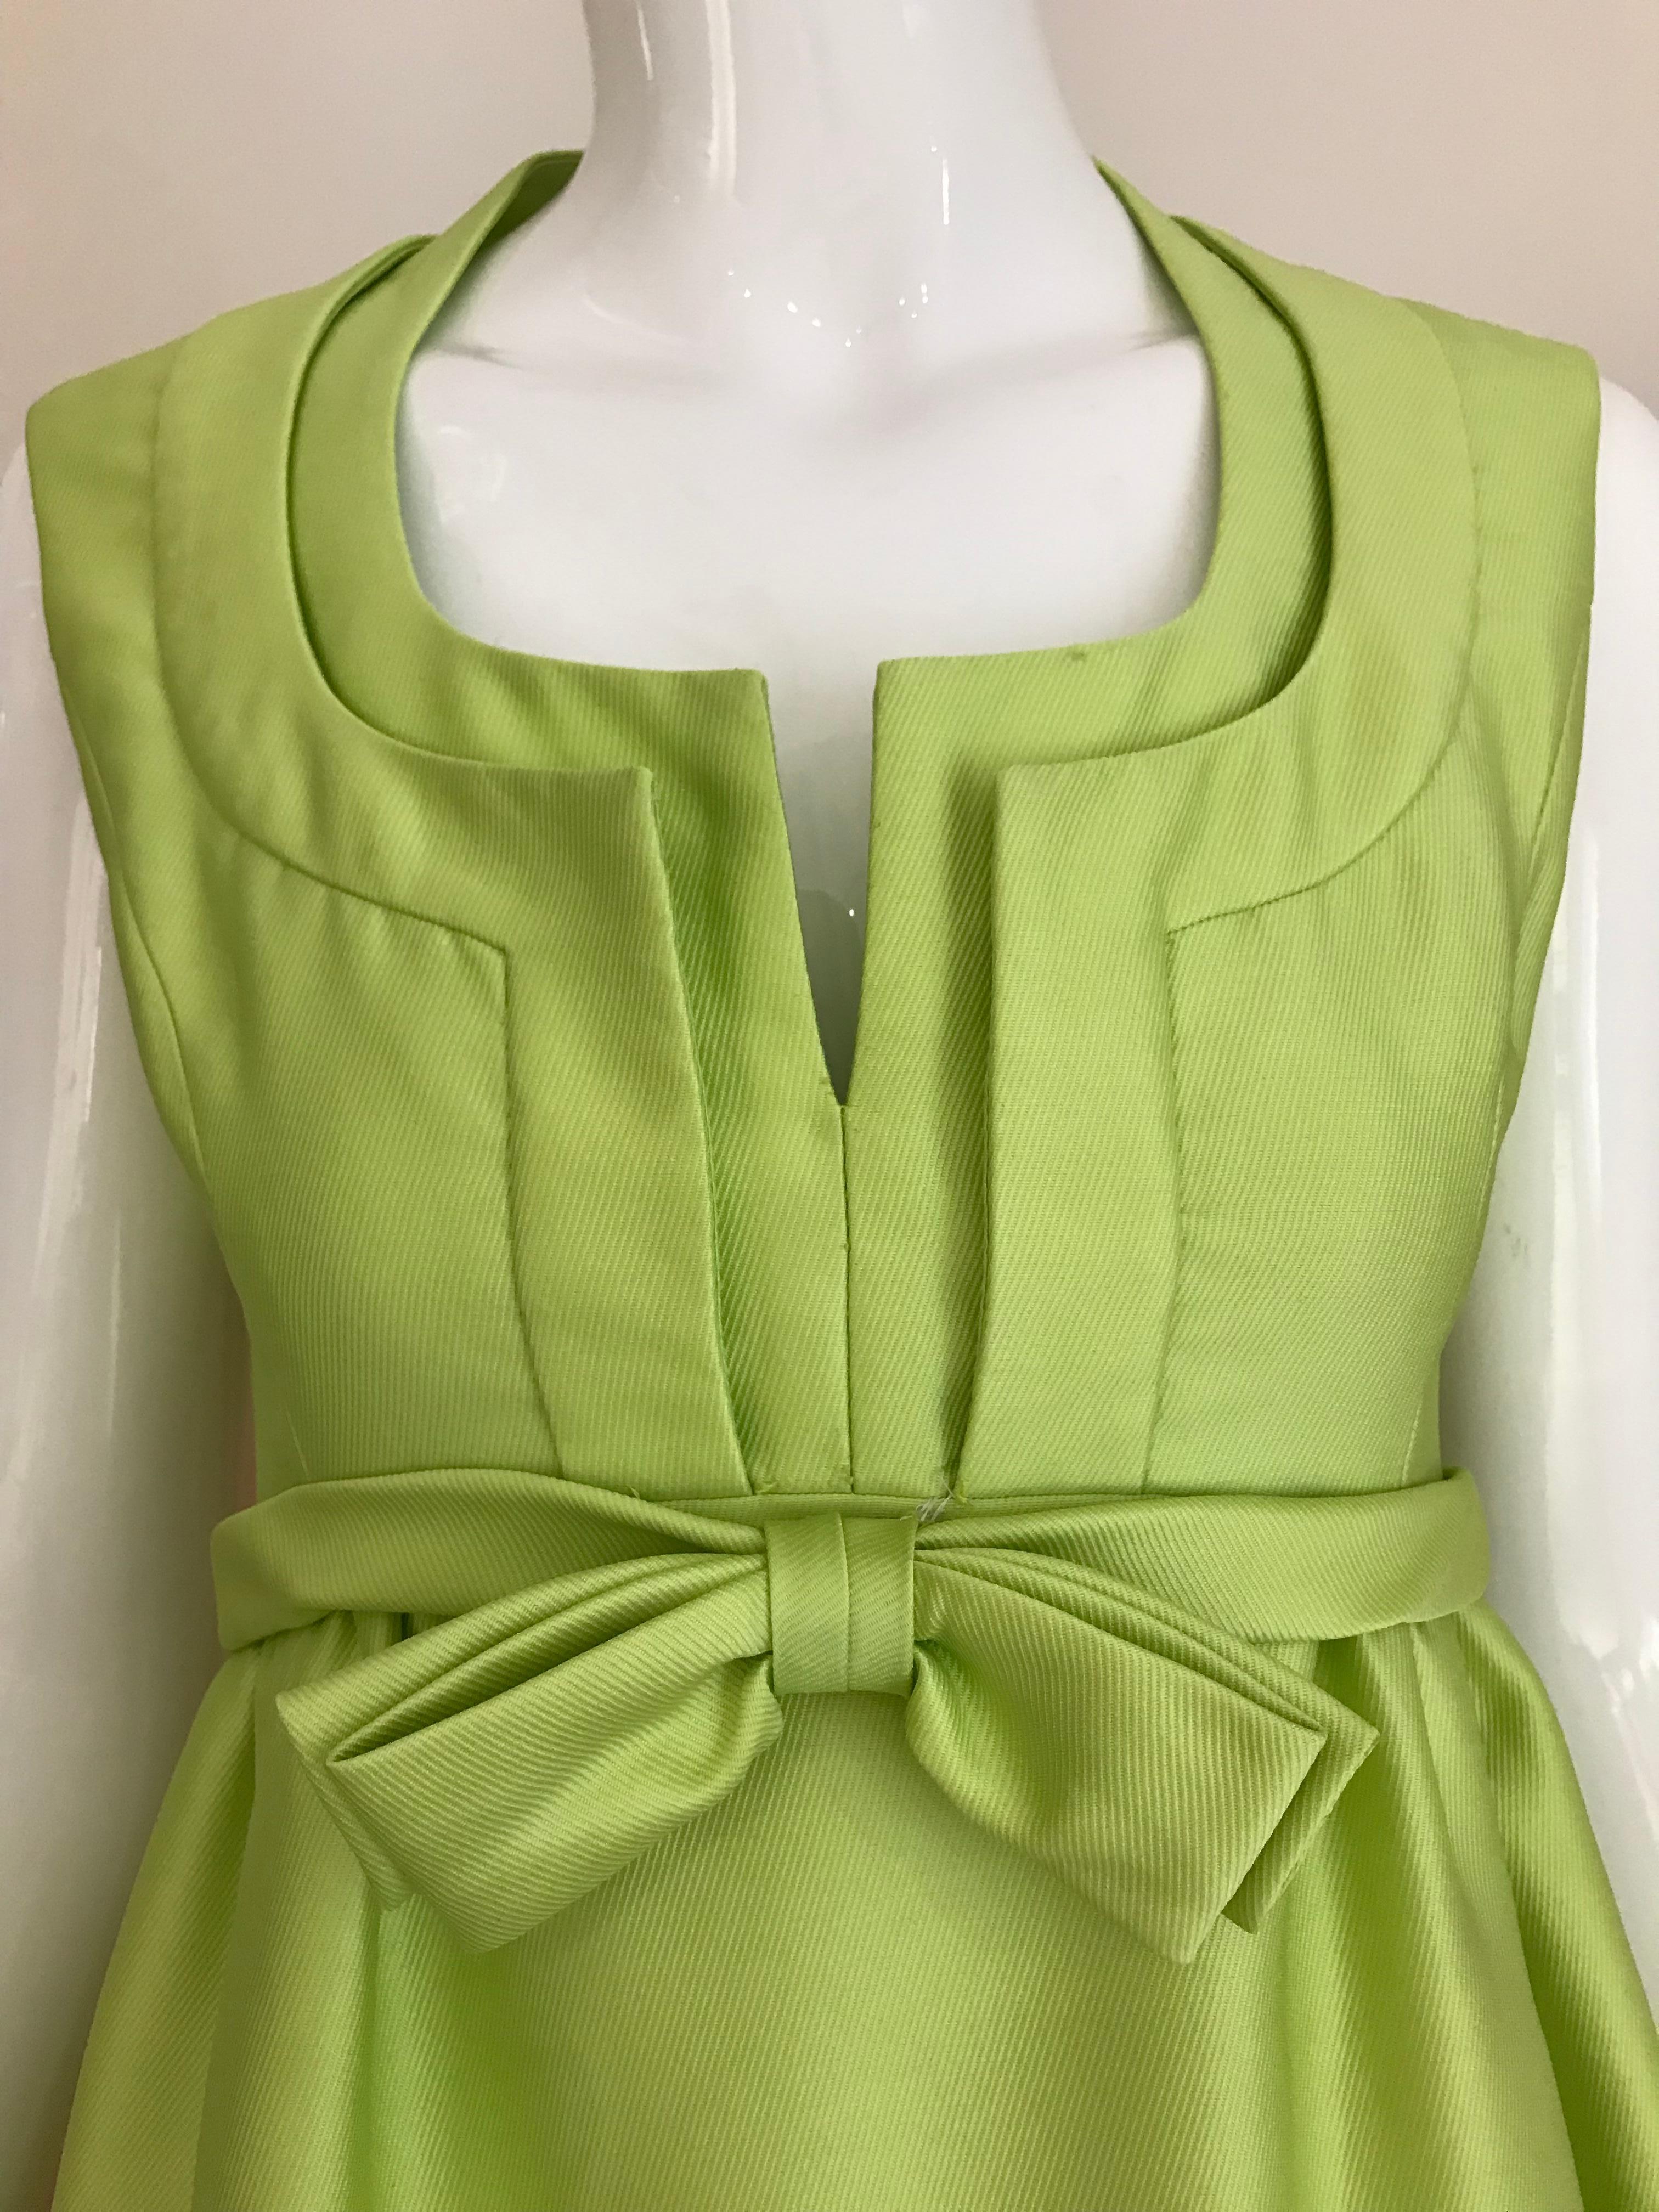 Magnifique robe en soie verte sans manches Elinor Simmons pour Malcolm Starr des années 1960, avec un magnifique décolleté et un nœud.
La robe est doublée et a des poches. 
Taille : 2/4 Small
Poitrine : 34 pouces/ Taille : 26 pouces/ Hanche : 40